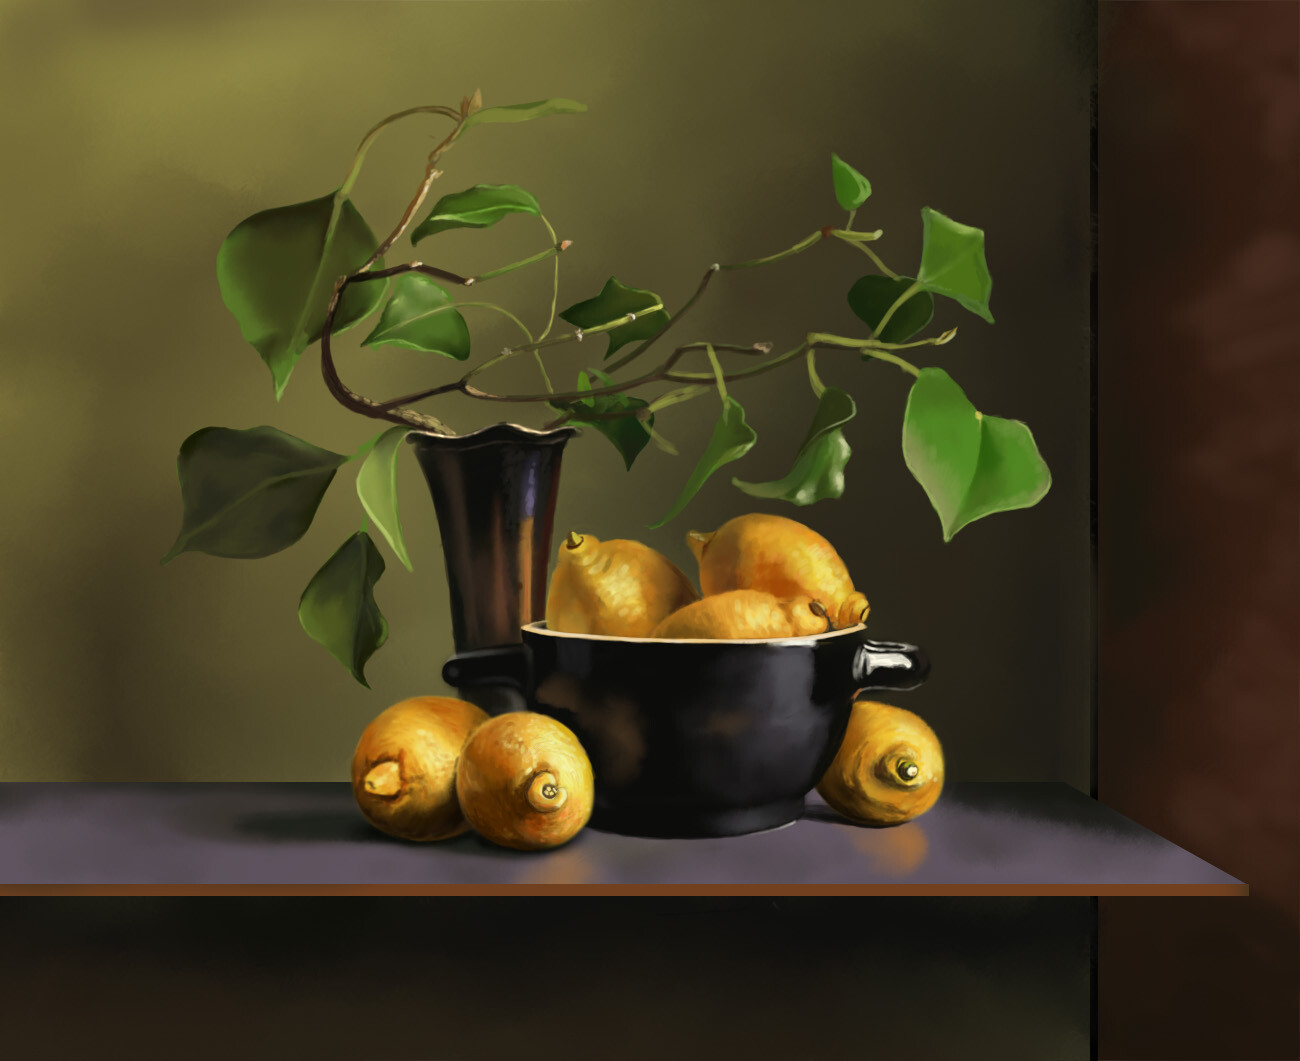 ArtStation - Still life painting - Lemons